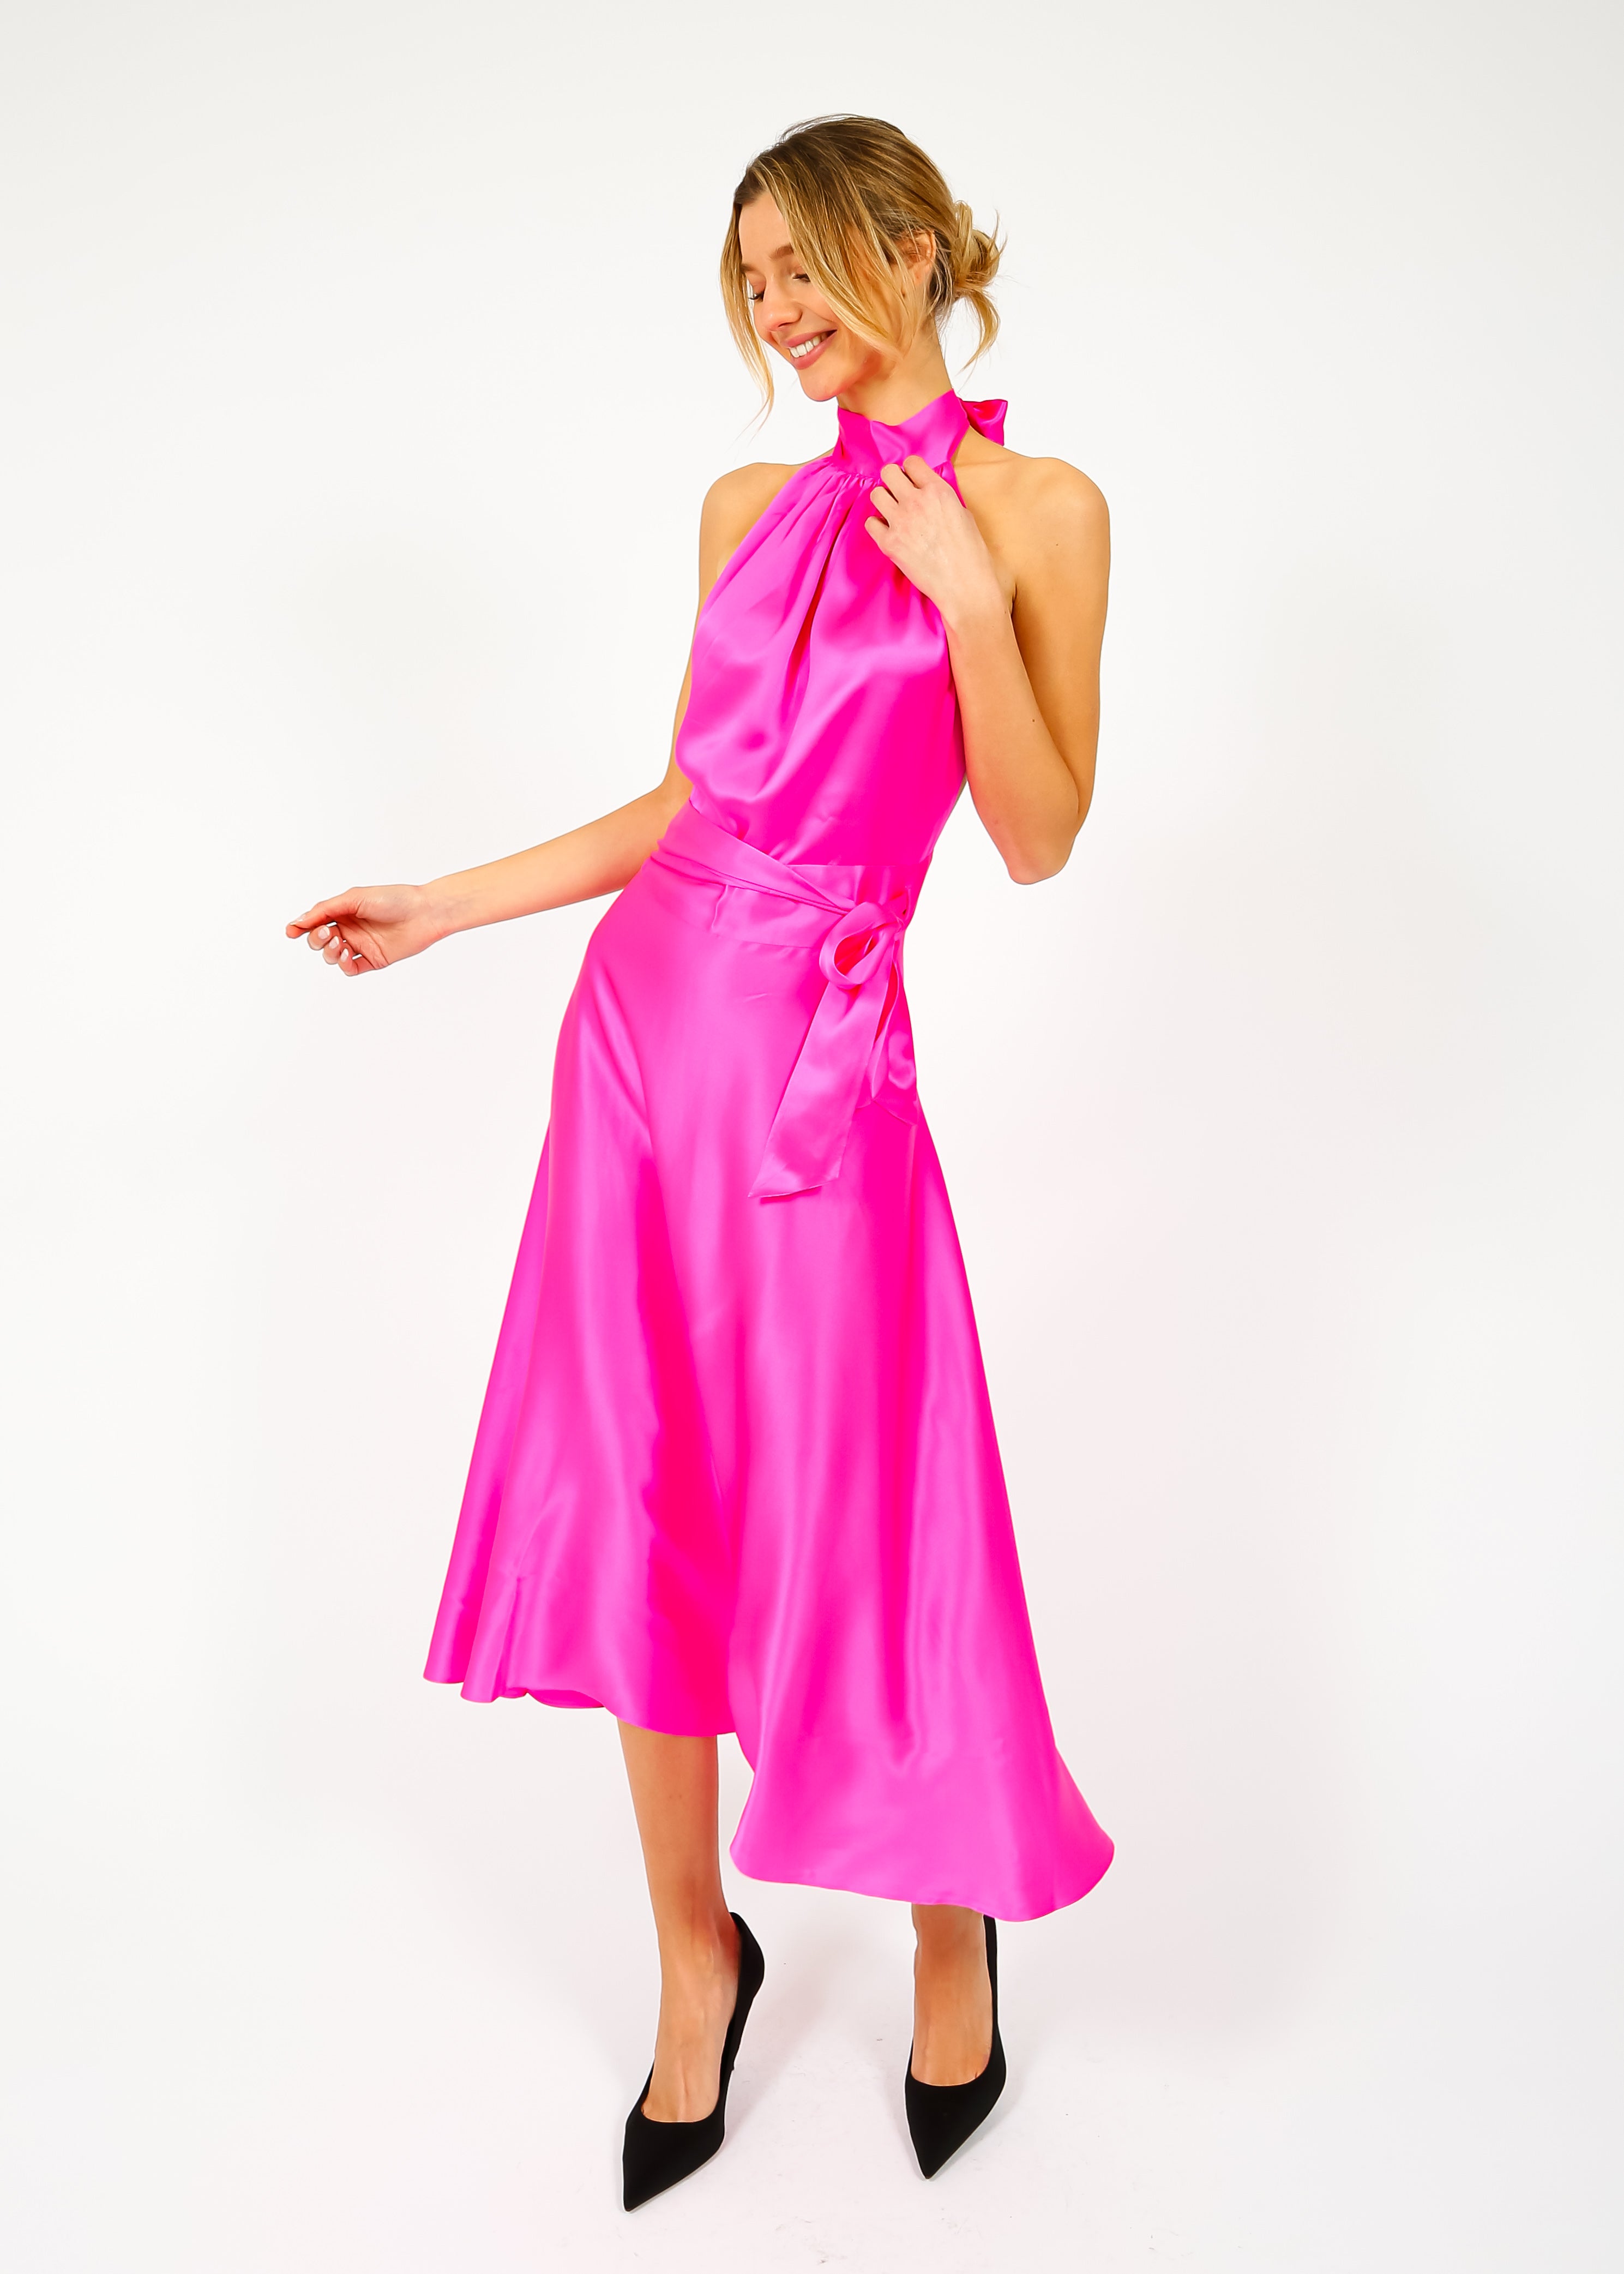 HARMUR Midi Wrap Dress in Pink Glow